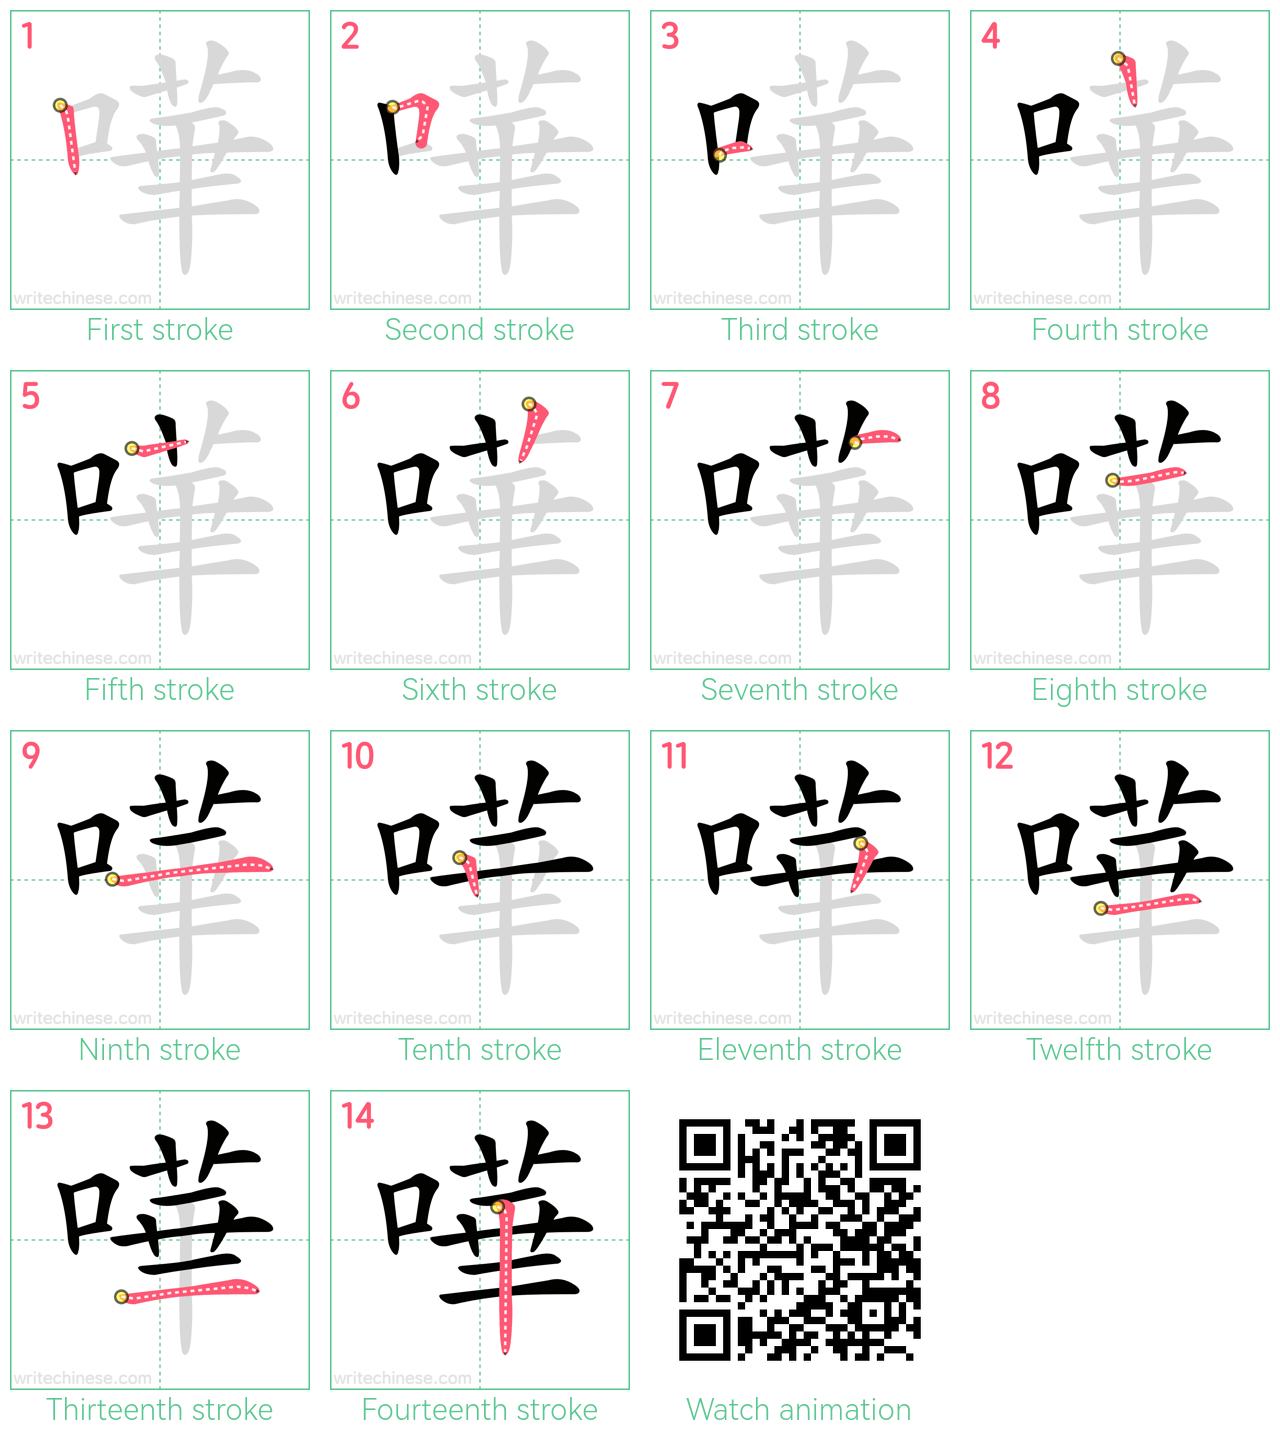 嘩 step-by-step stroke order diagrams